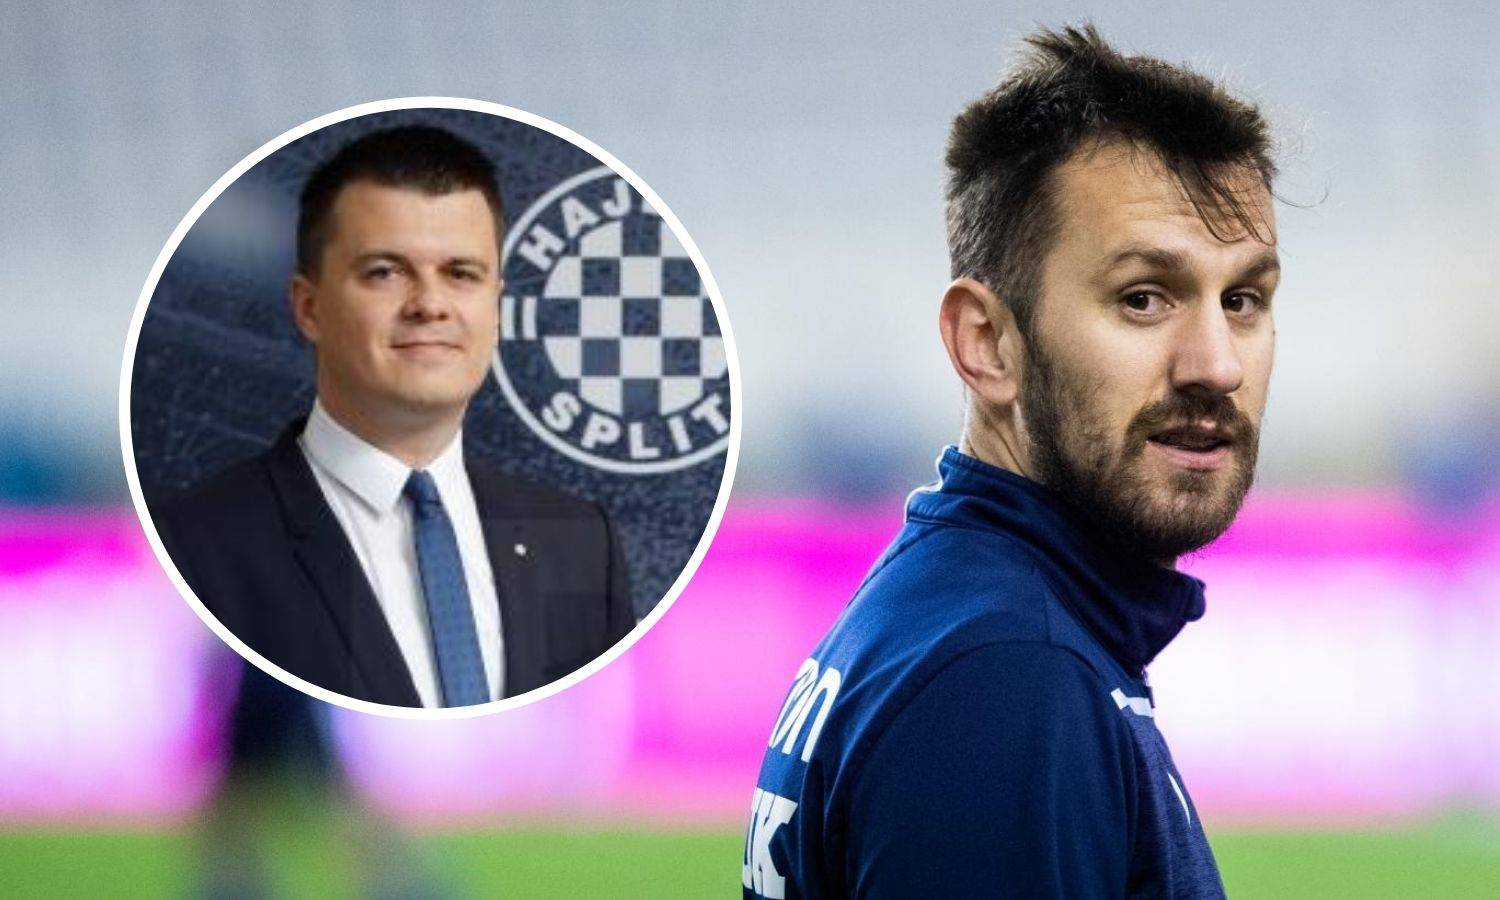 Niko i Gustaf slažu novi Hajduk. Za Nejašmića i Caktaša nema mjesta, na 'odmoru' do odlaska